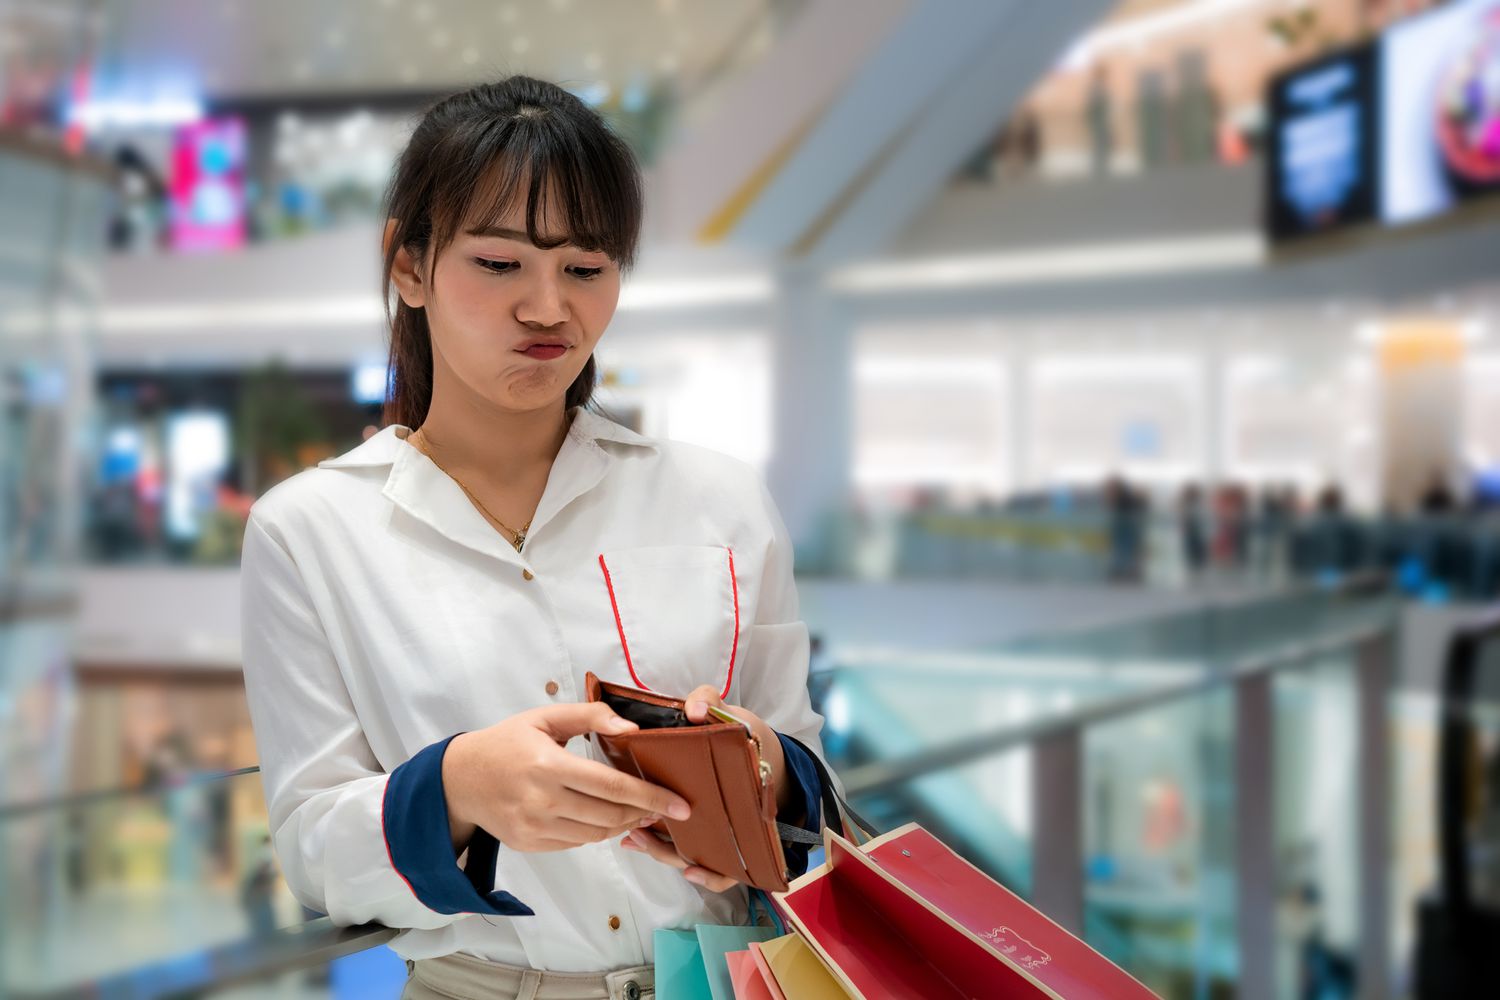 一名年轻女子在商场购物时皱着眉头看钱包